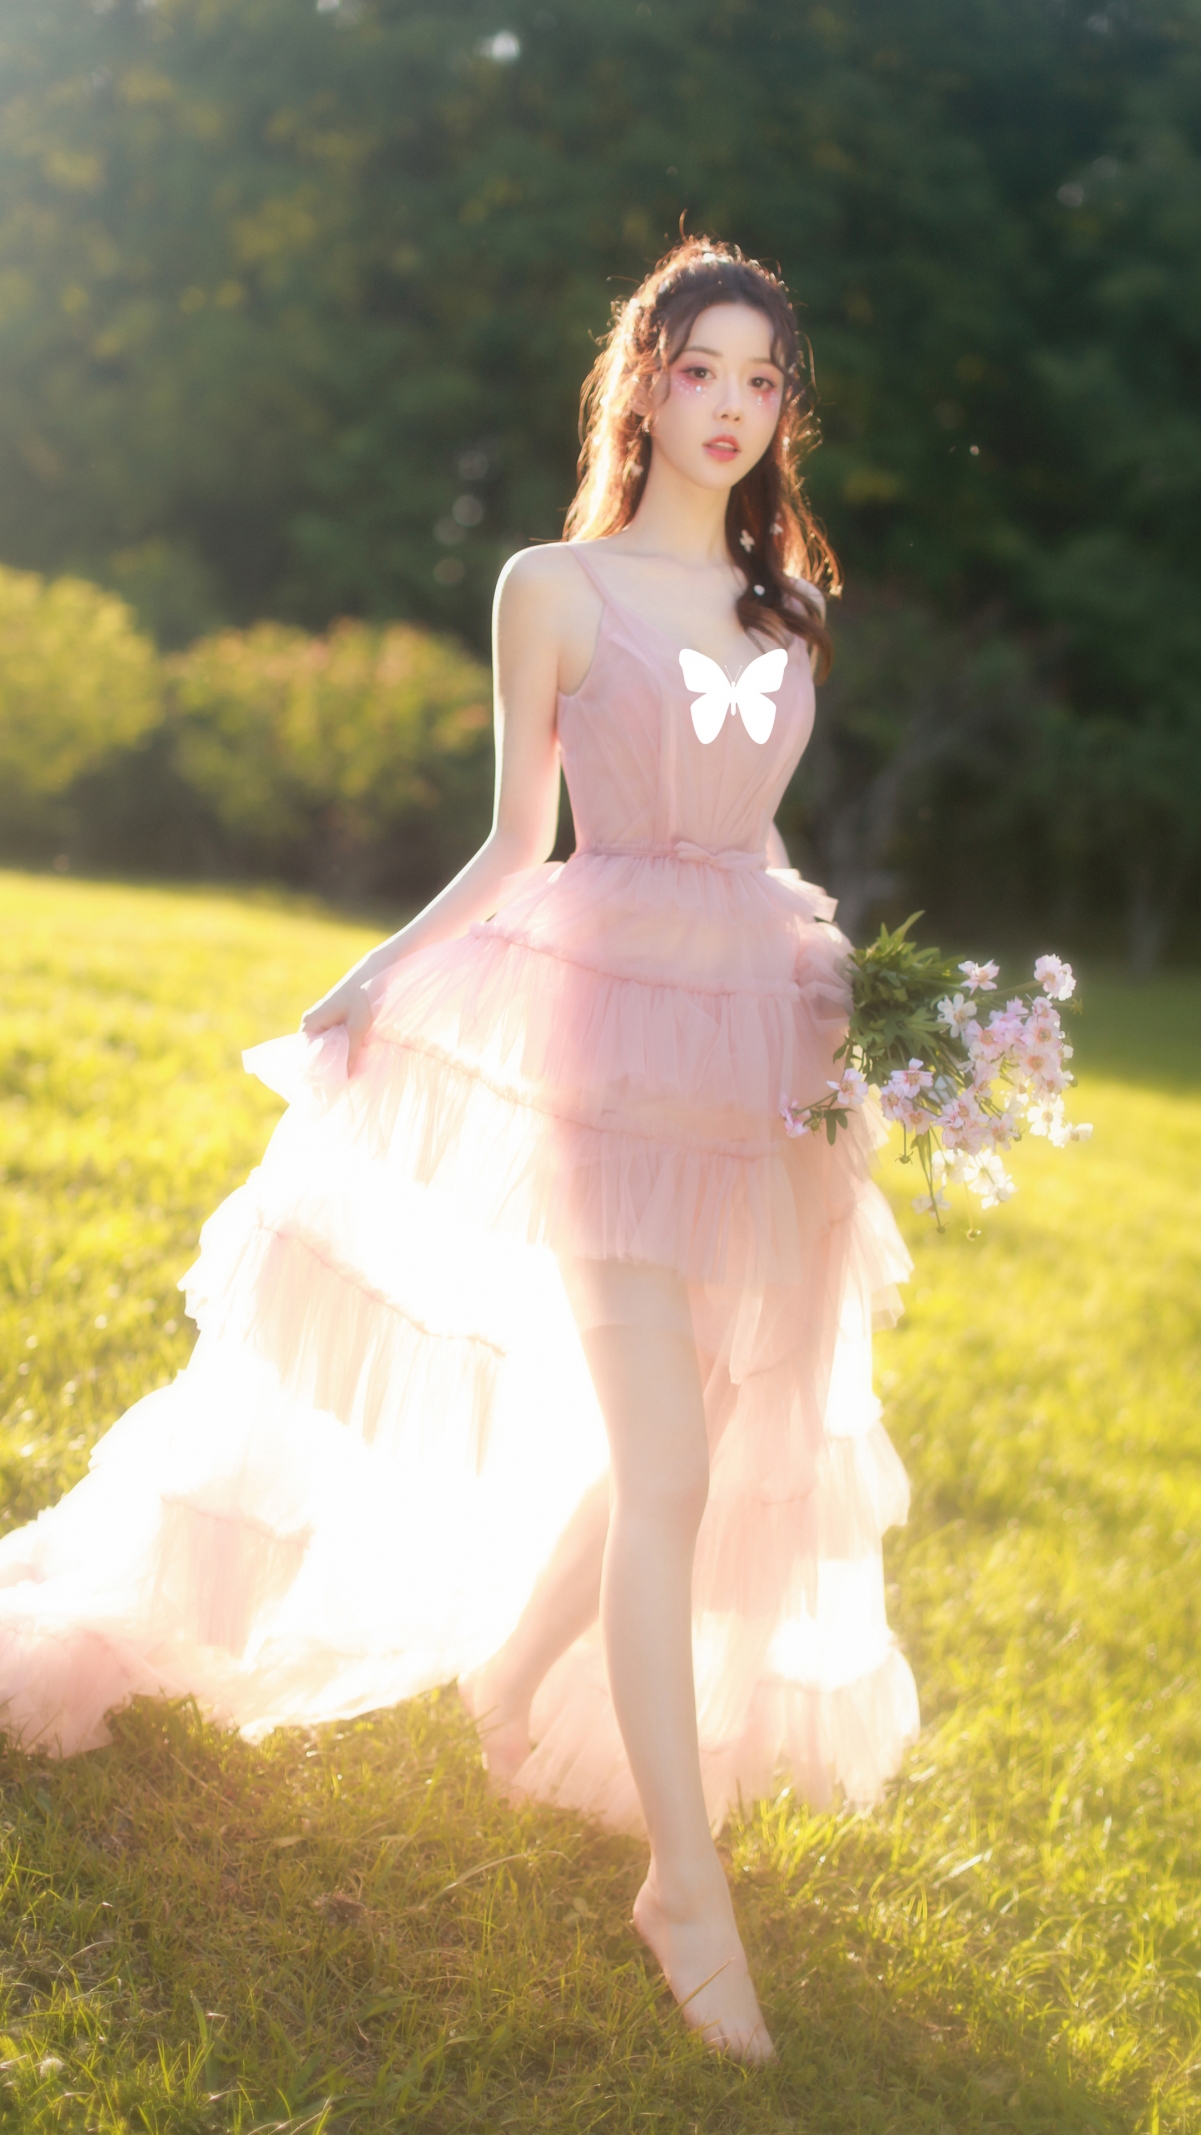 小仙女 唯美 粉色婚纱裙子 美腿 鲜花 森林 4k手机壁纸